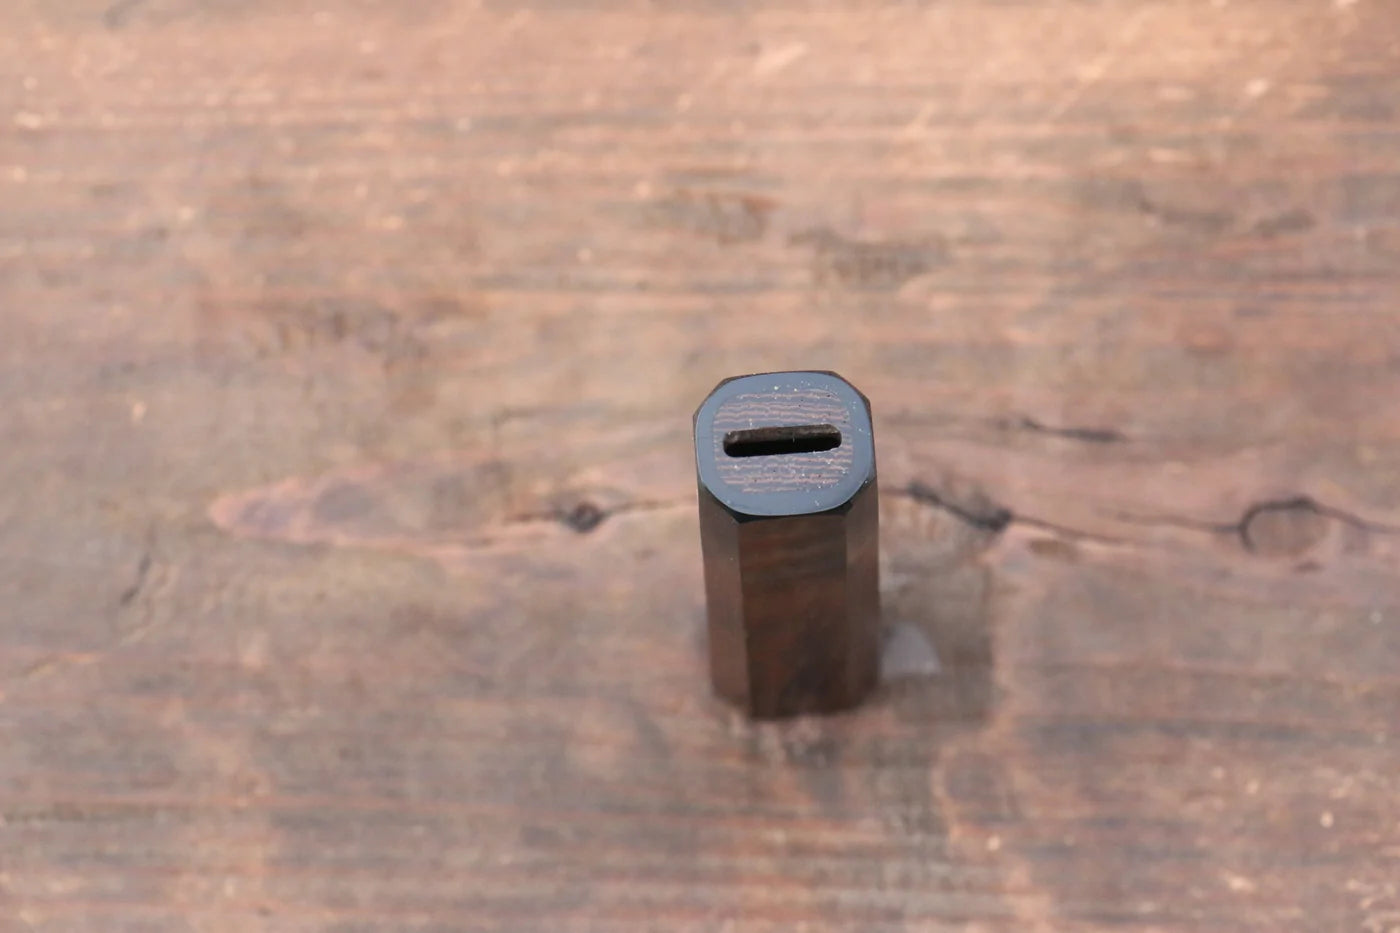 Kleiner Messergriff aus Wenge-Holz (geeignet für 150-mm-Kleinmesser)